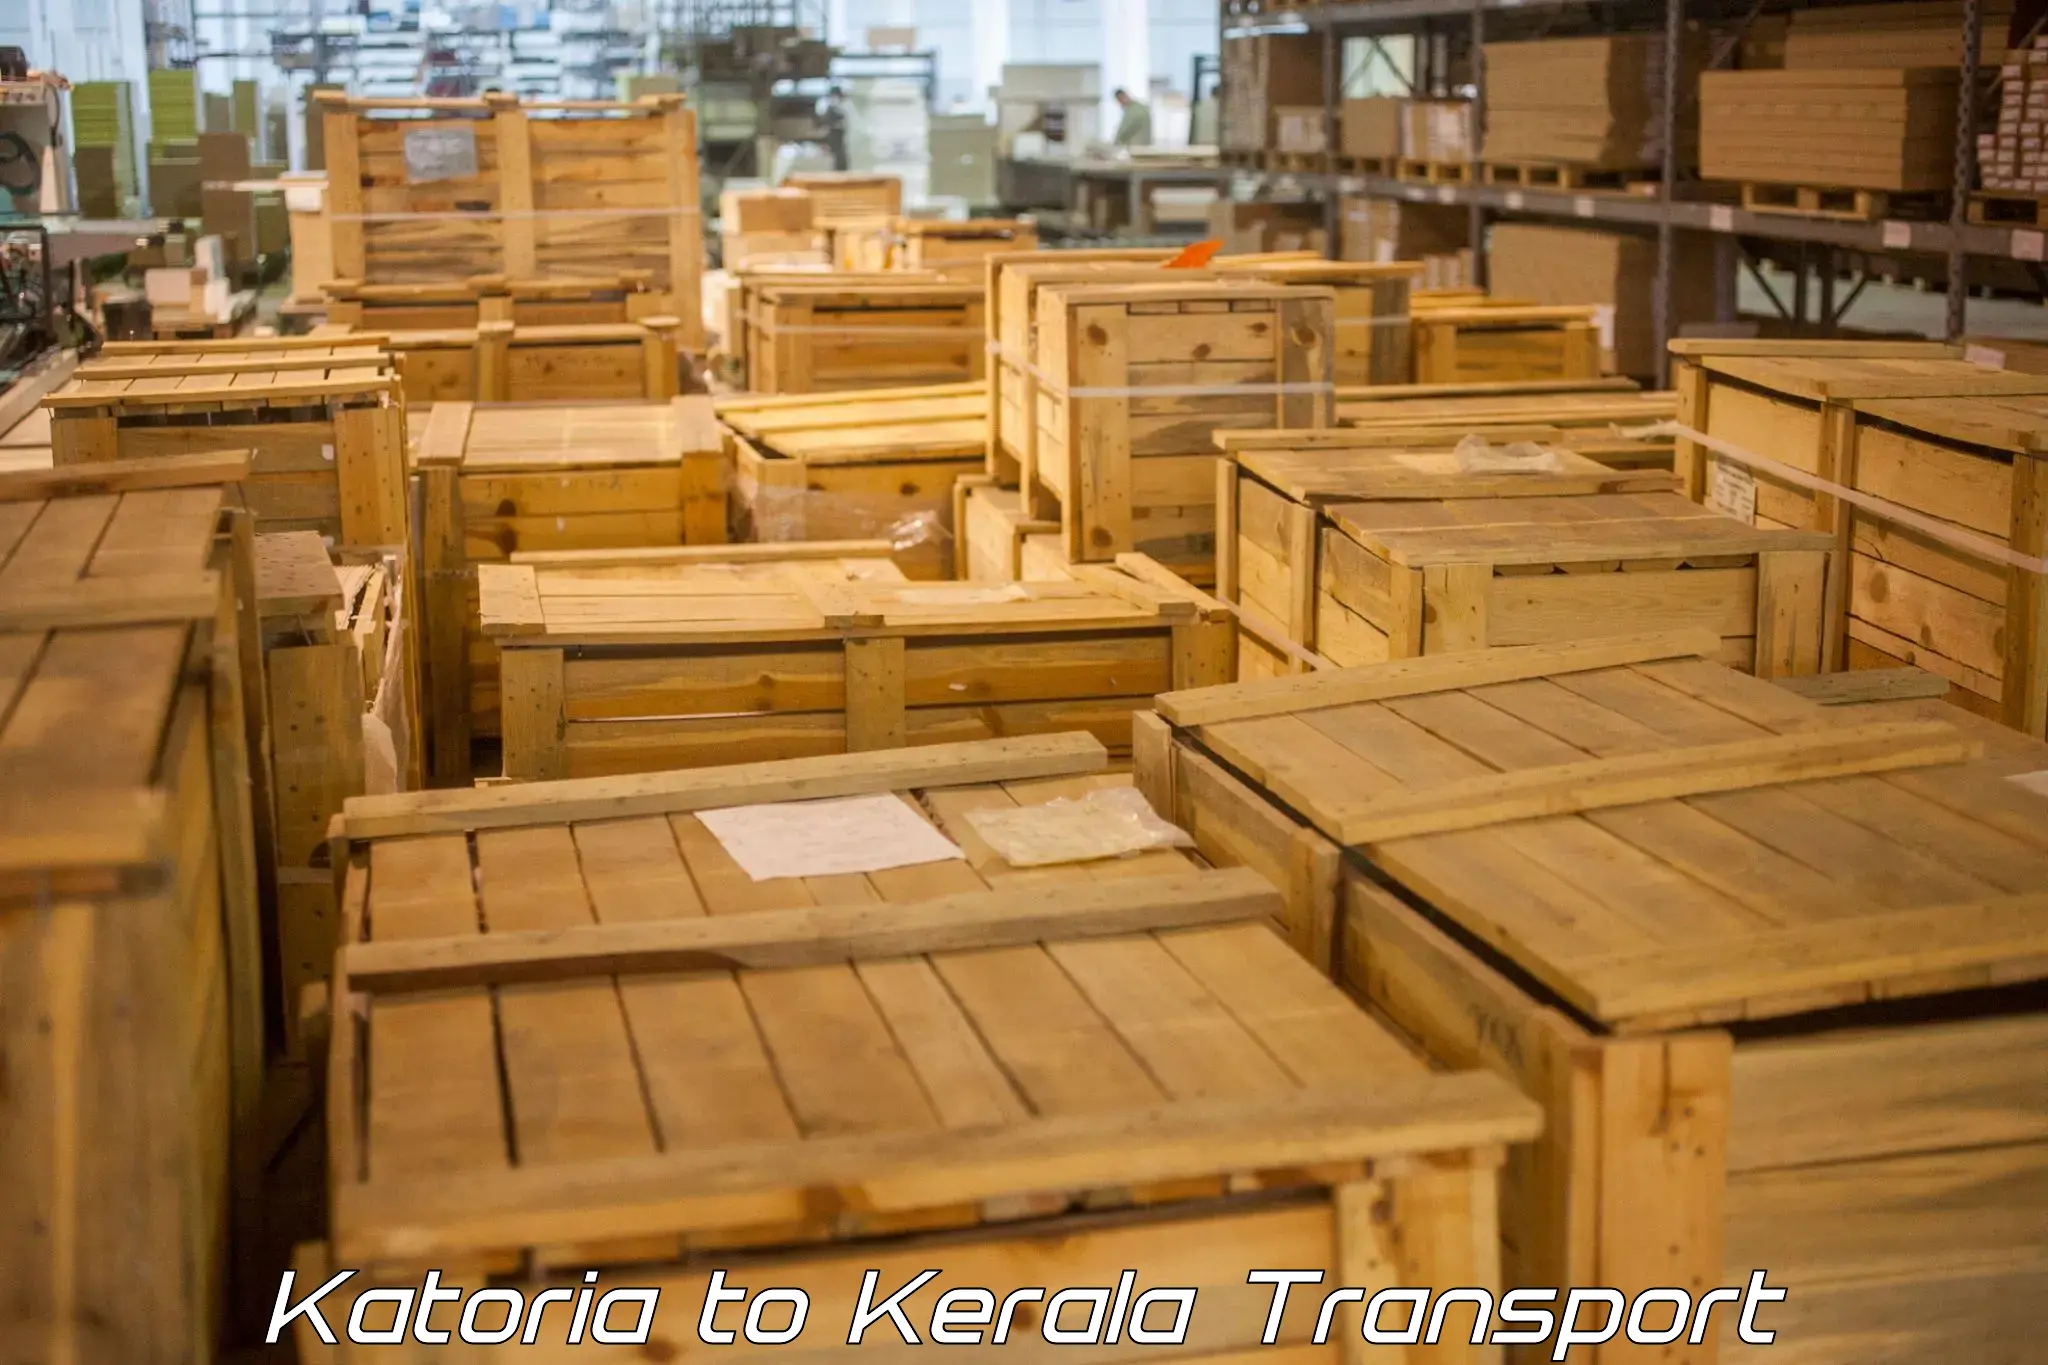 Transport in sharing Katoria to Kanhangad